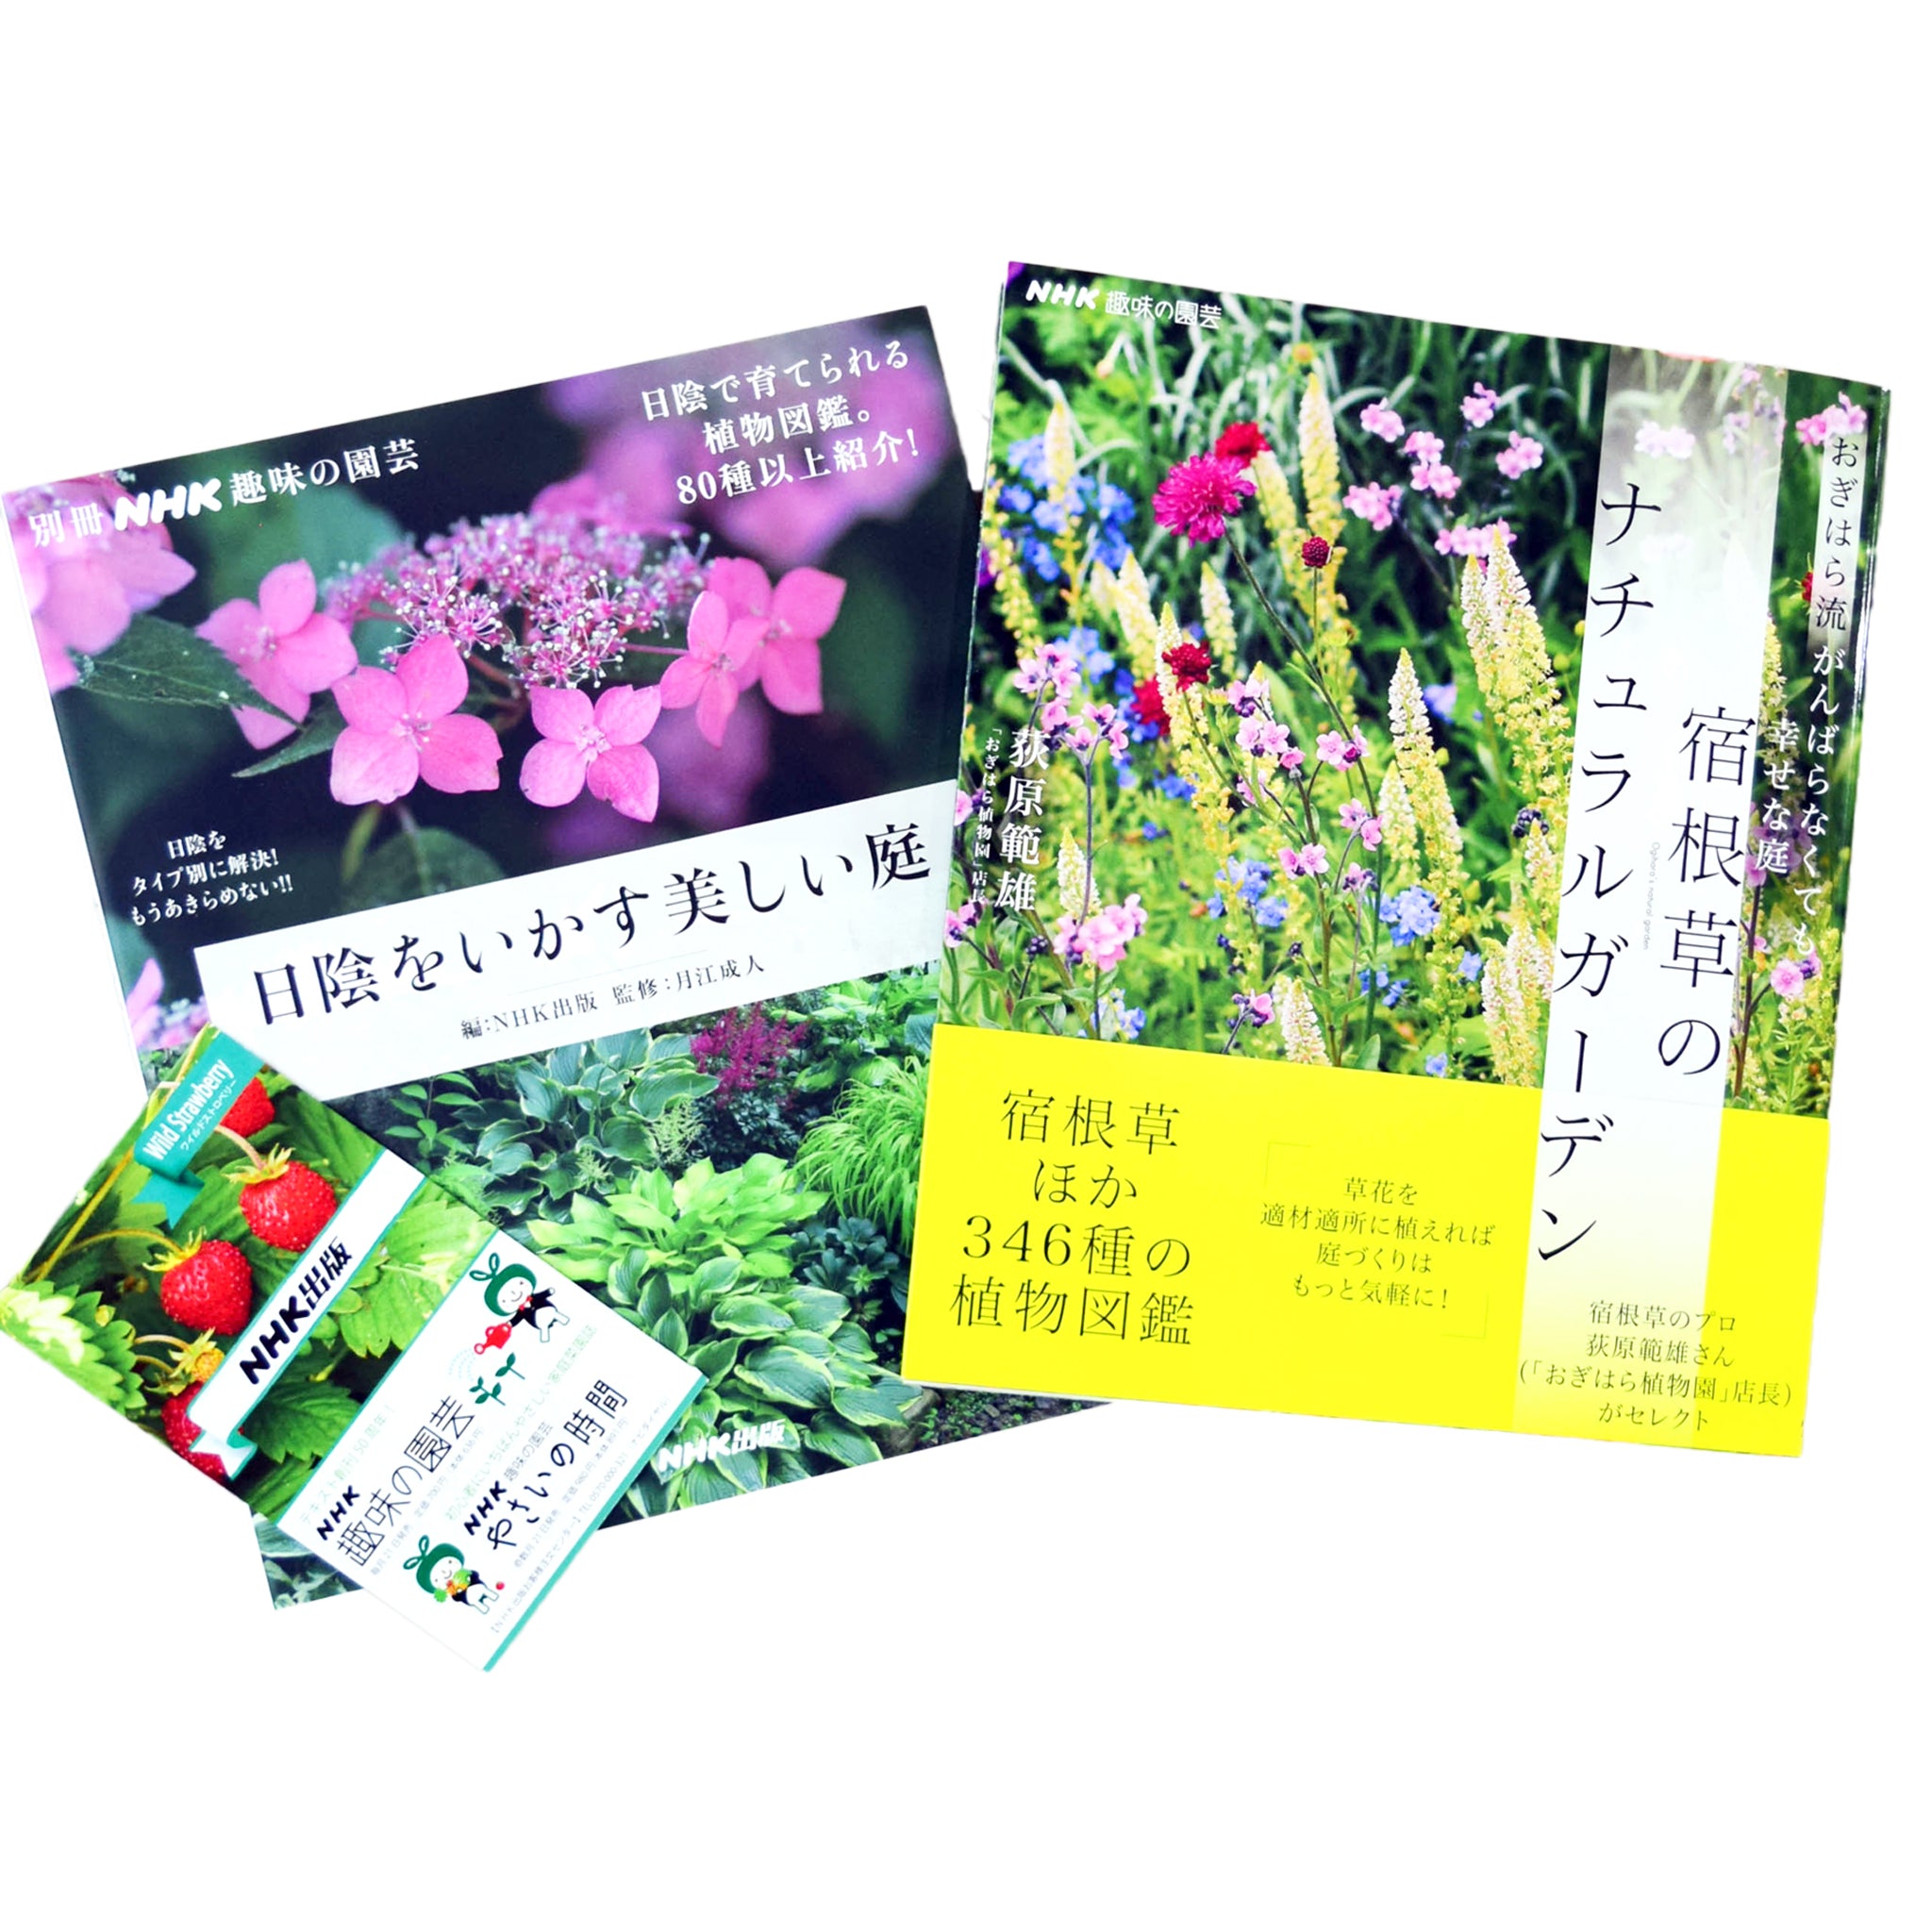 ガーデニングを楽しむ書籍セット 「趣味の園芸」編集長のイチ推し - NHKグループ公式通販 - NHKグループモール